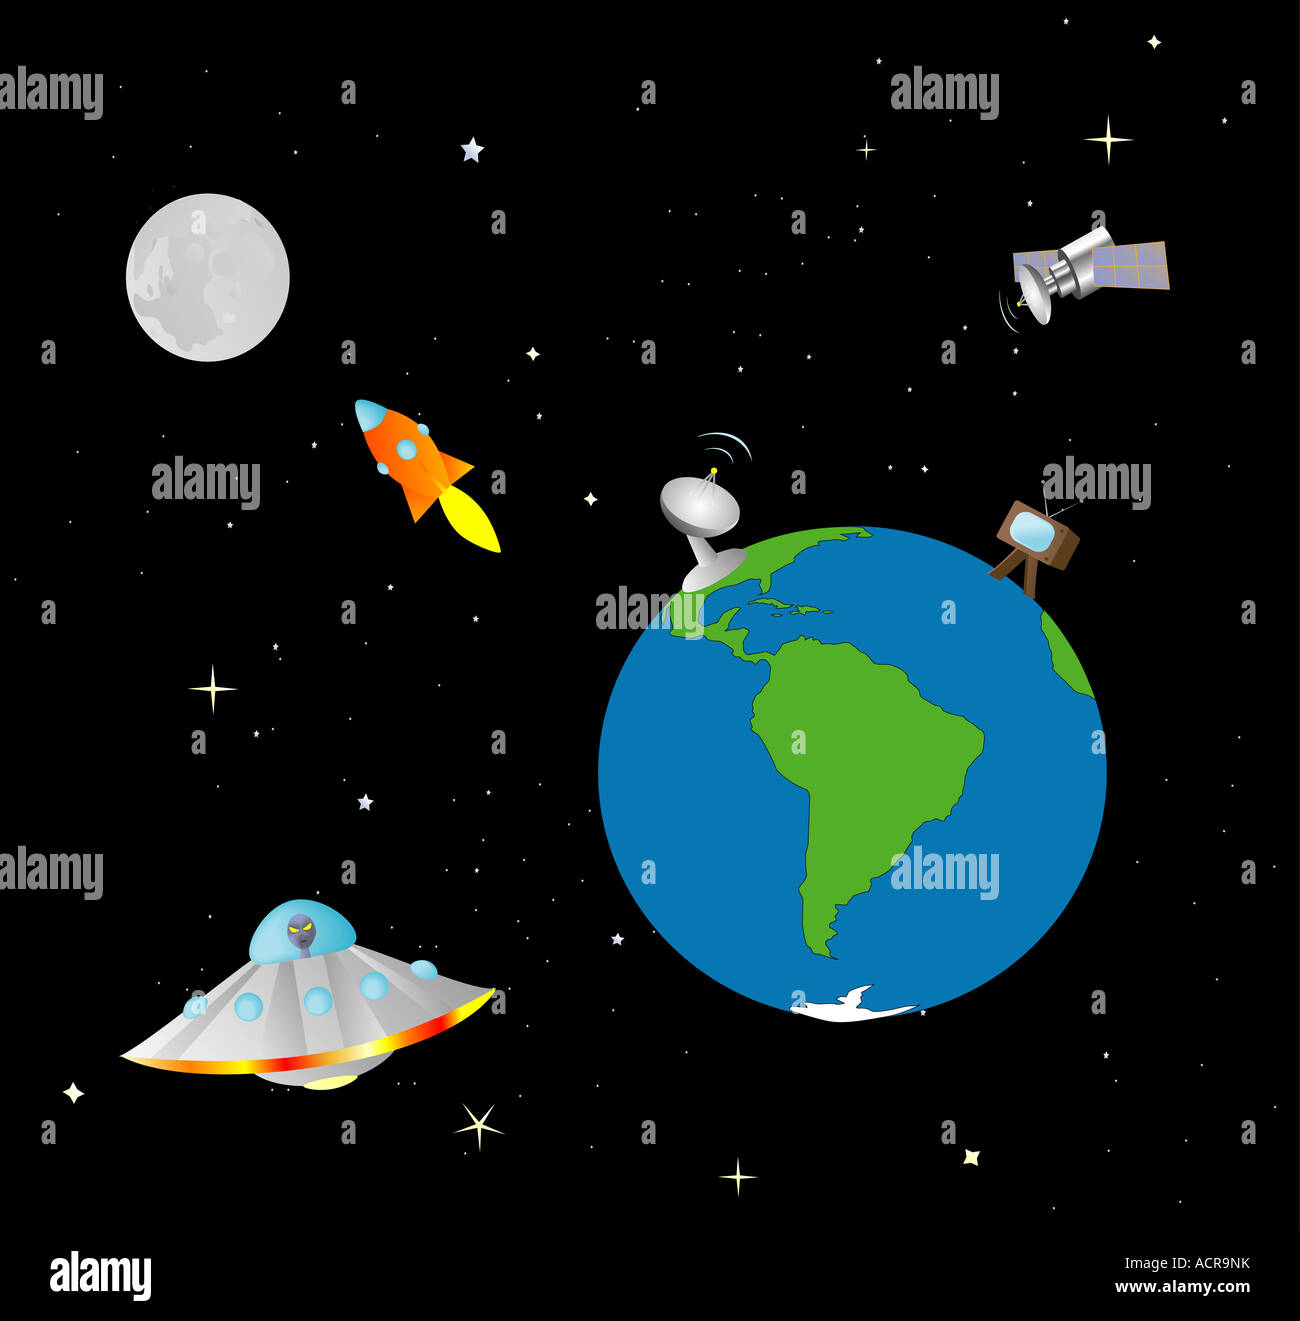 Cartoon-artige Darstellung der Erde und dem Weltraum Stockfoto